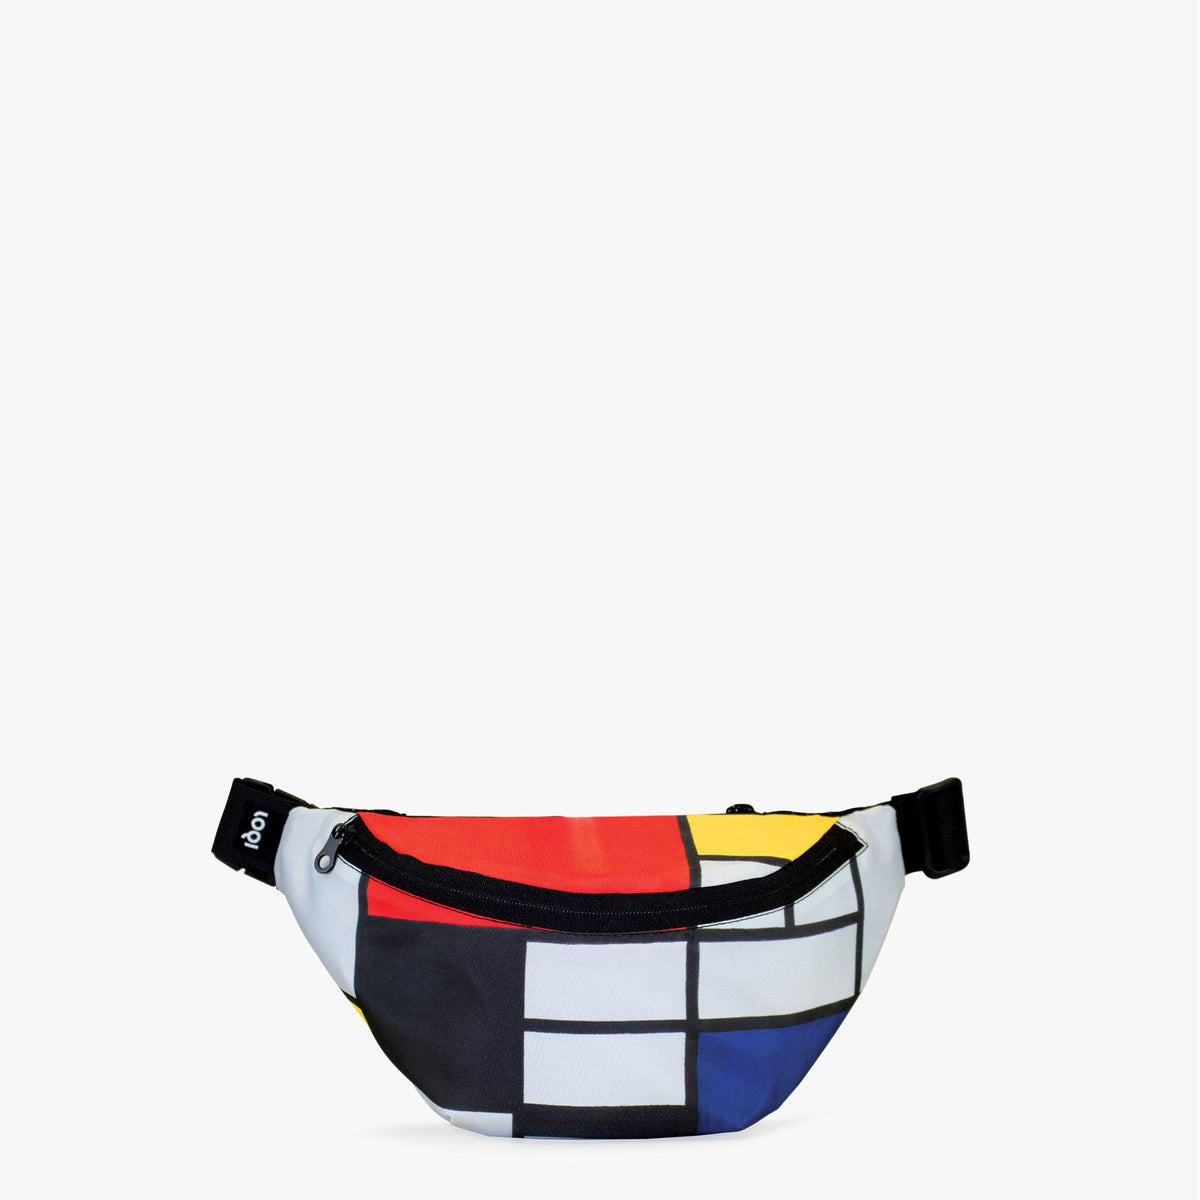 Composition avec rouge, jaune, bleu et noir, sac à dos recyclé